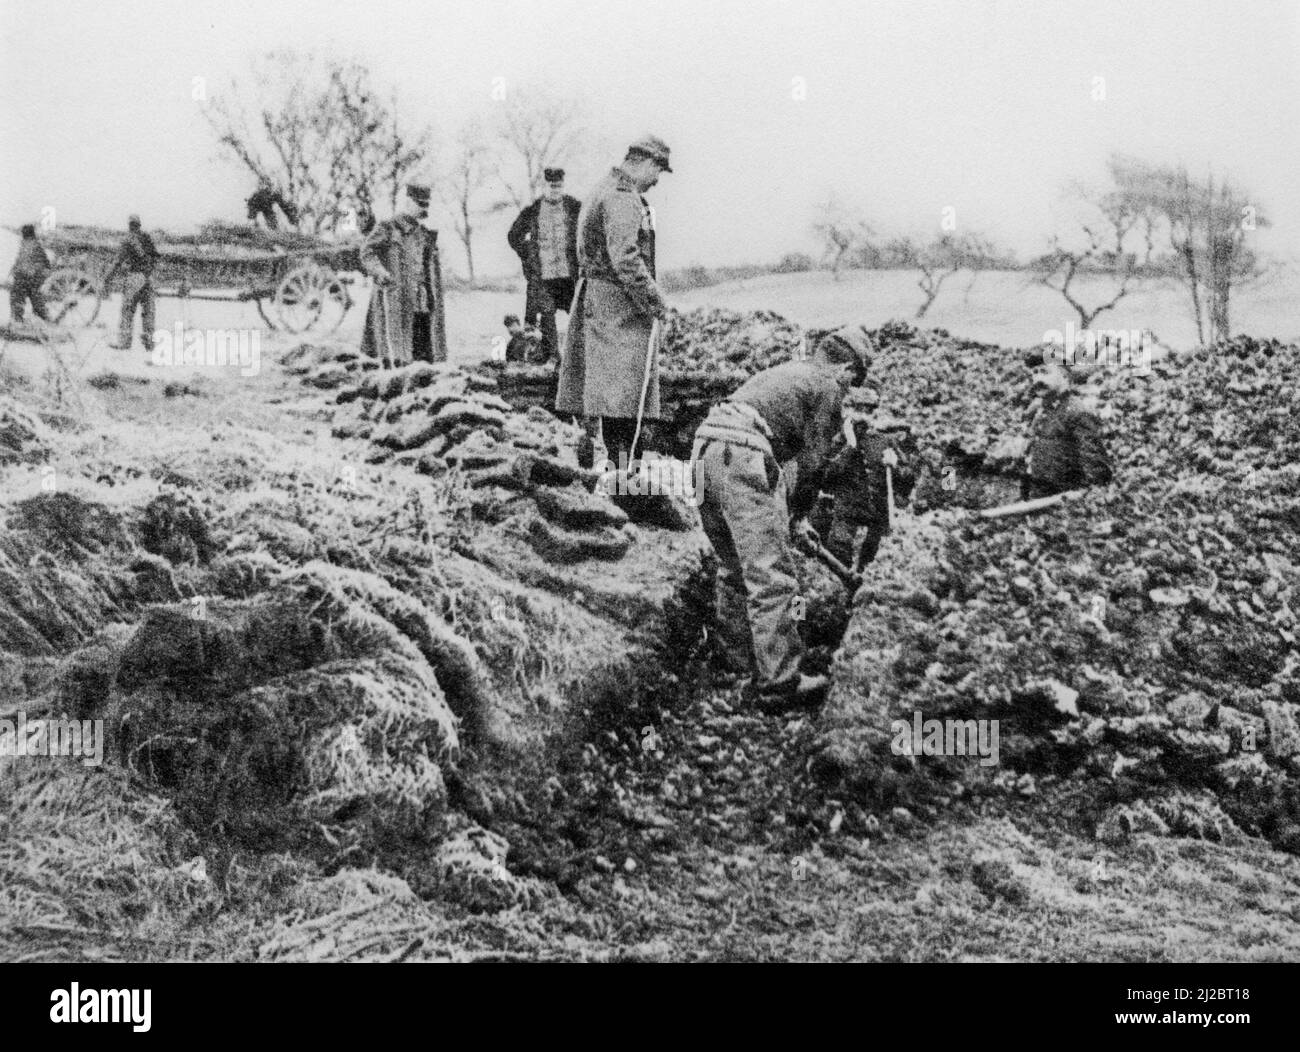 WWI British 2nd Battalion, Royal Scots Fusiliers creusant des tranchées à Geluwe en 1914 pendant la première Guerre mondiale en Flandre Occidentale, Belgique Banque D'Images